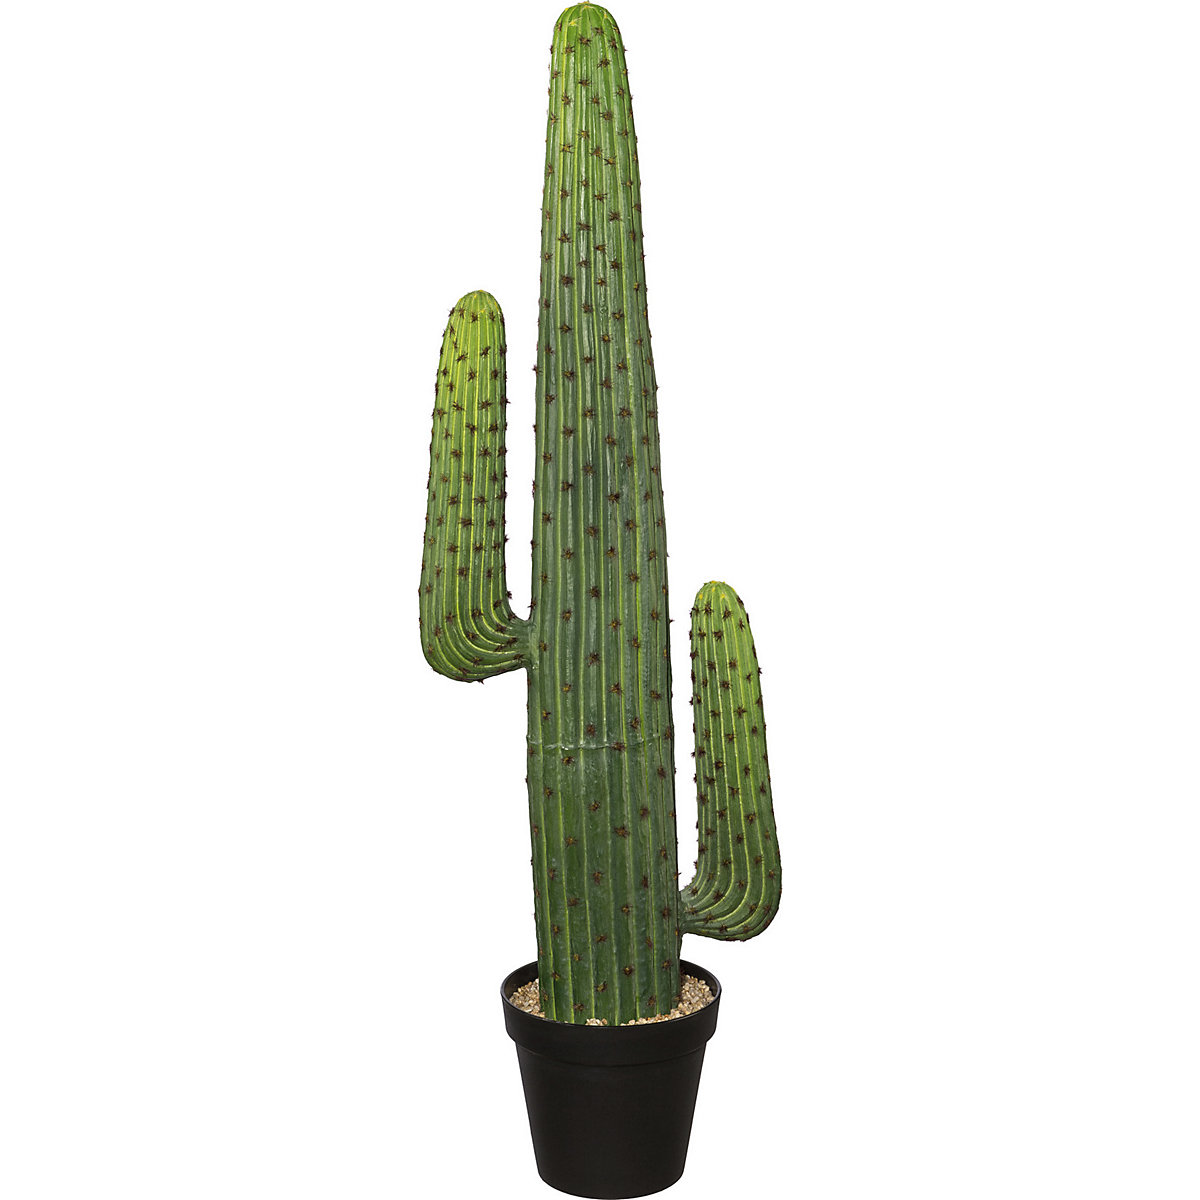 Mexico cactus